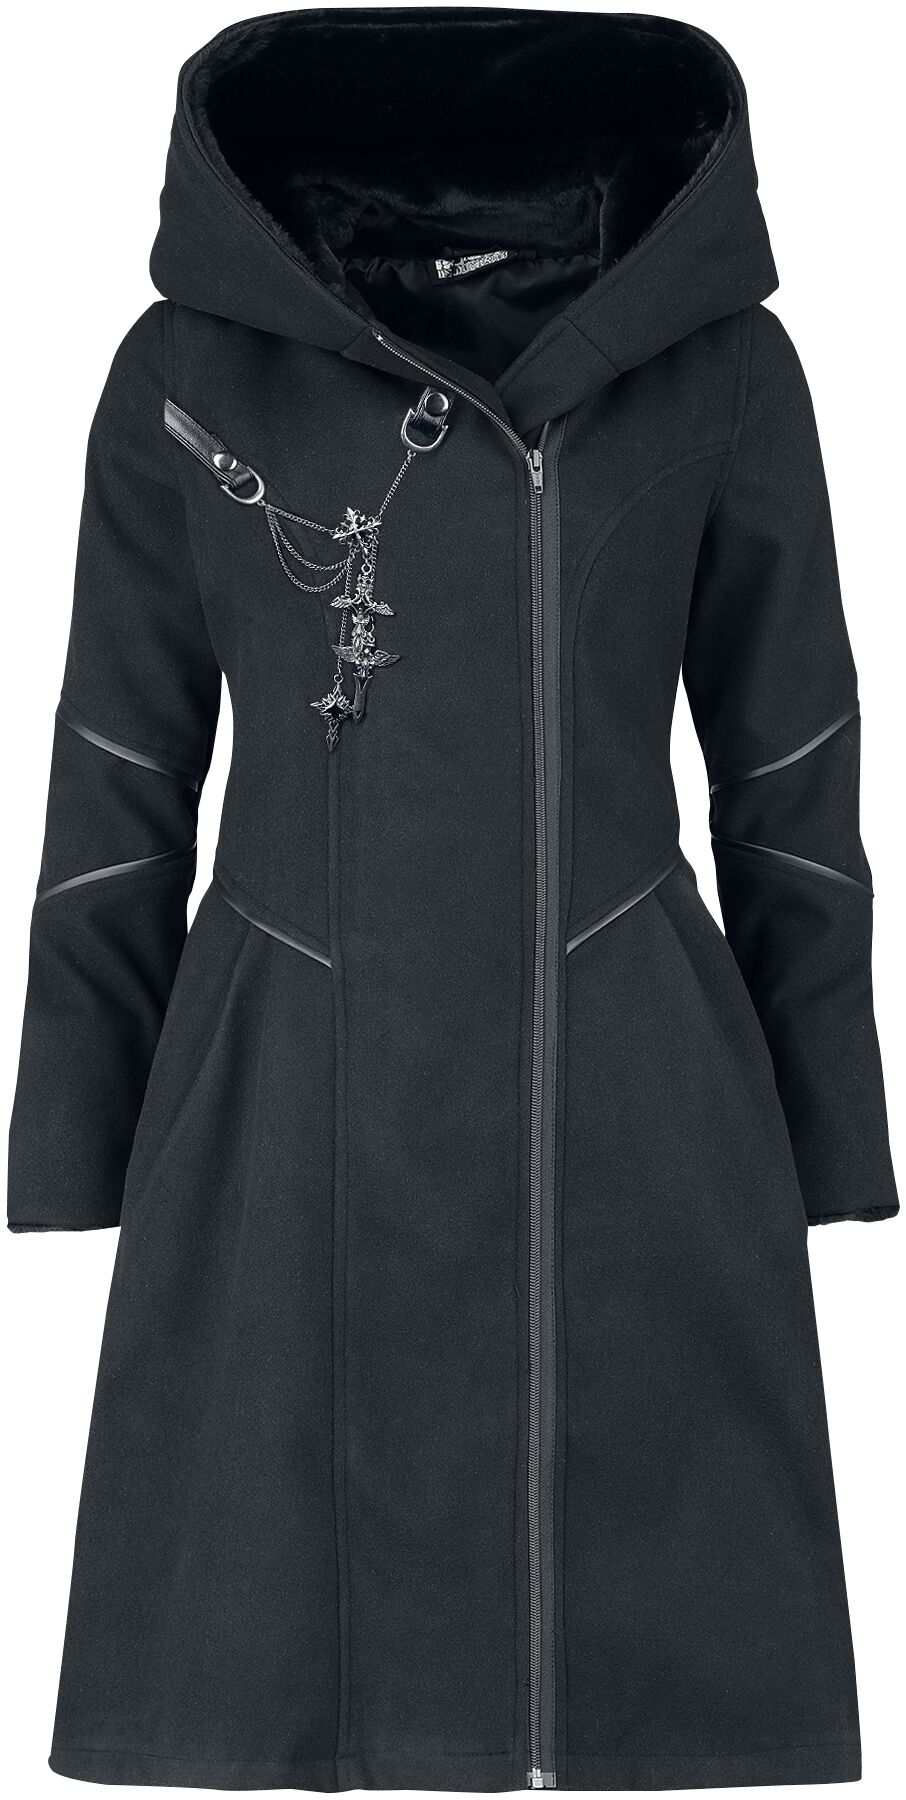 Manteaux Gothic de Poizen Industries - Possession Coat - XS à 3XL - pour Femme - noir